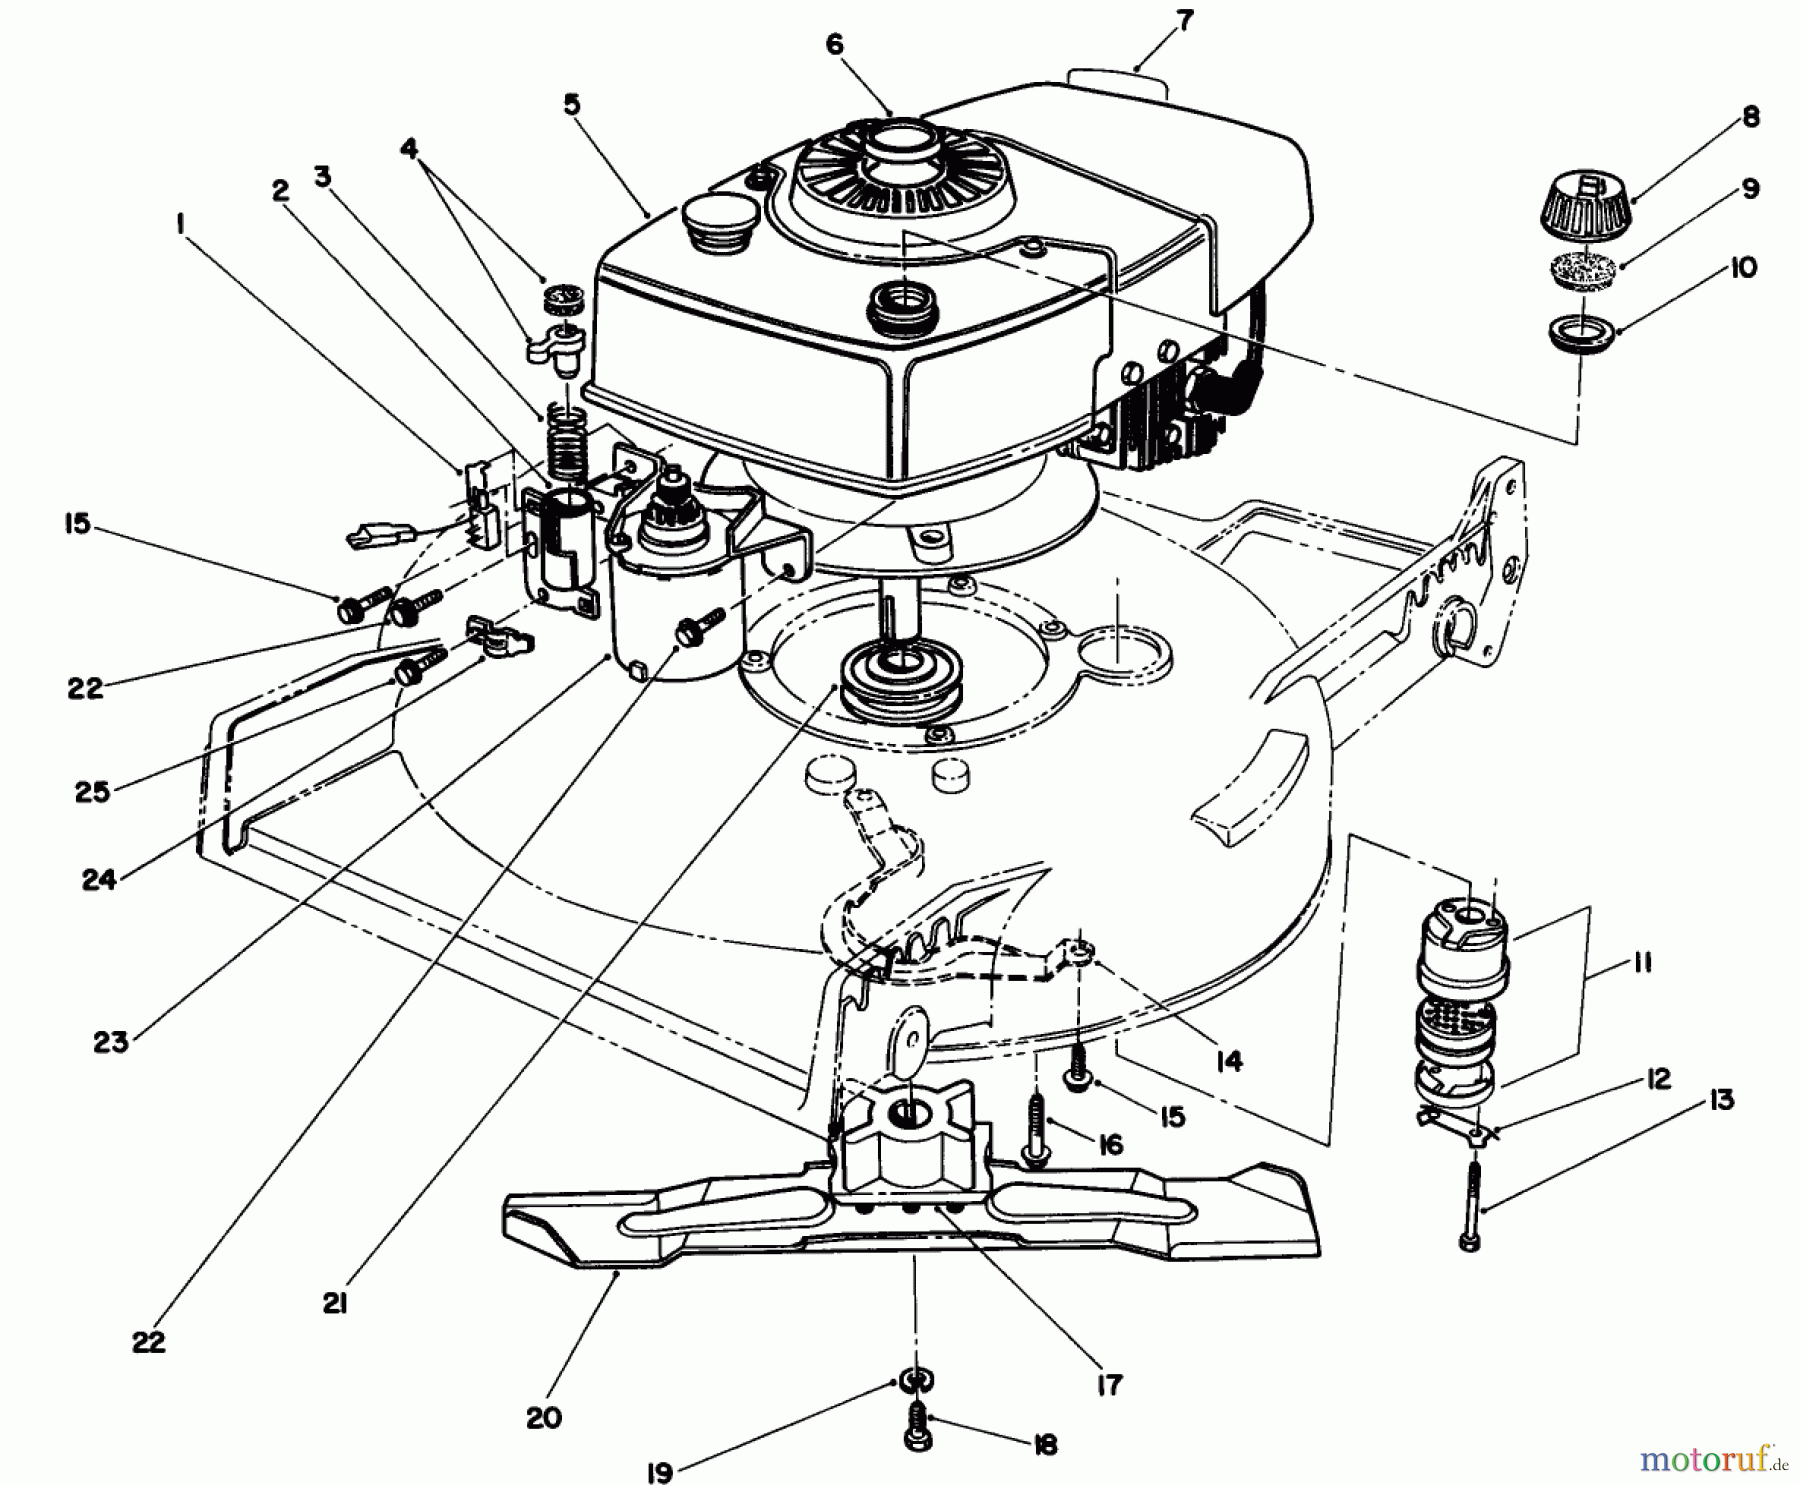  Toro Neu Mowers, Walk-Behind Seite 1 20677 - Toro Lawnmower, 1989 (9000001-9999999) ENGINE ASSEMBLY